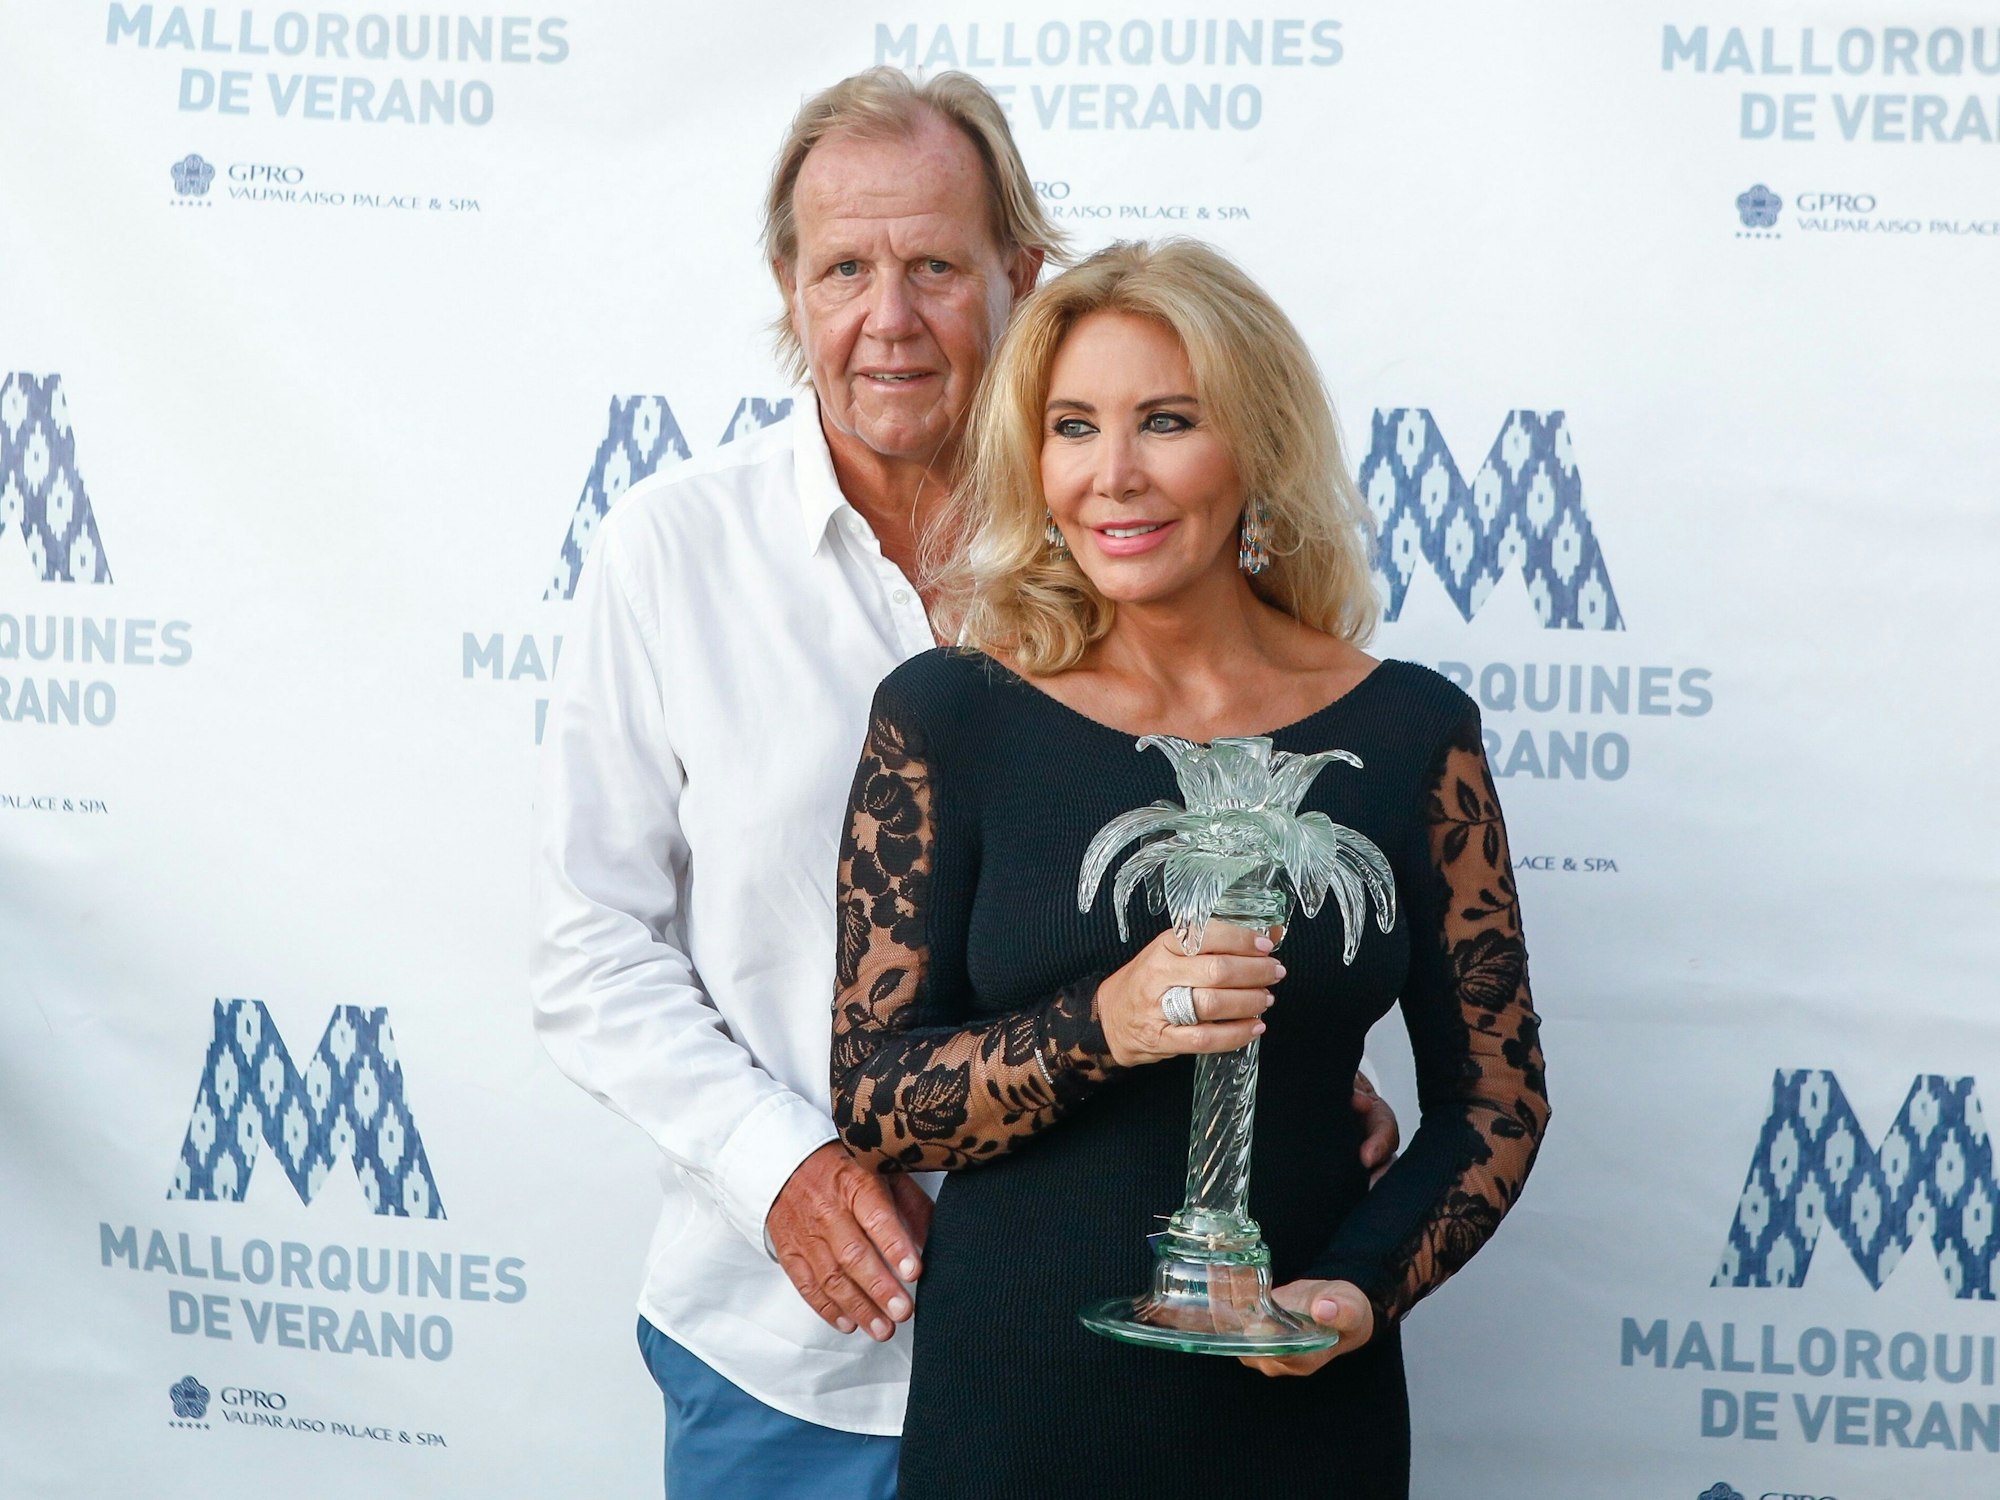 Matthias Kühn und seine FrauNorma Duval bei einem Event auf Mallorca, hier im August 2021.